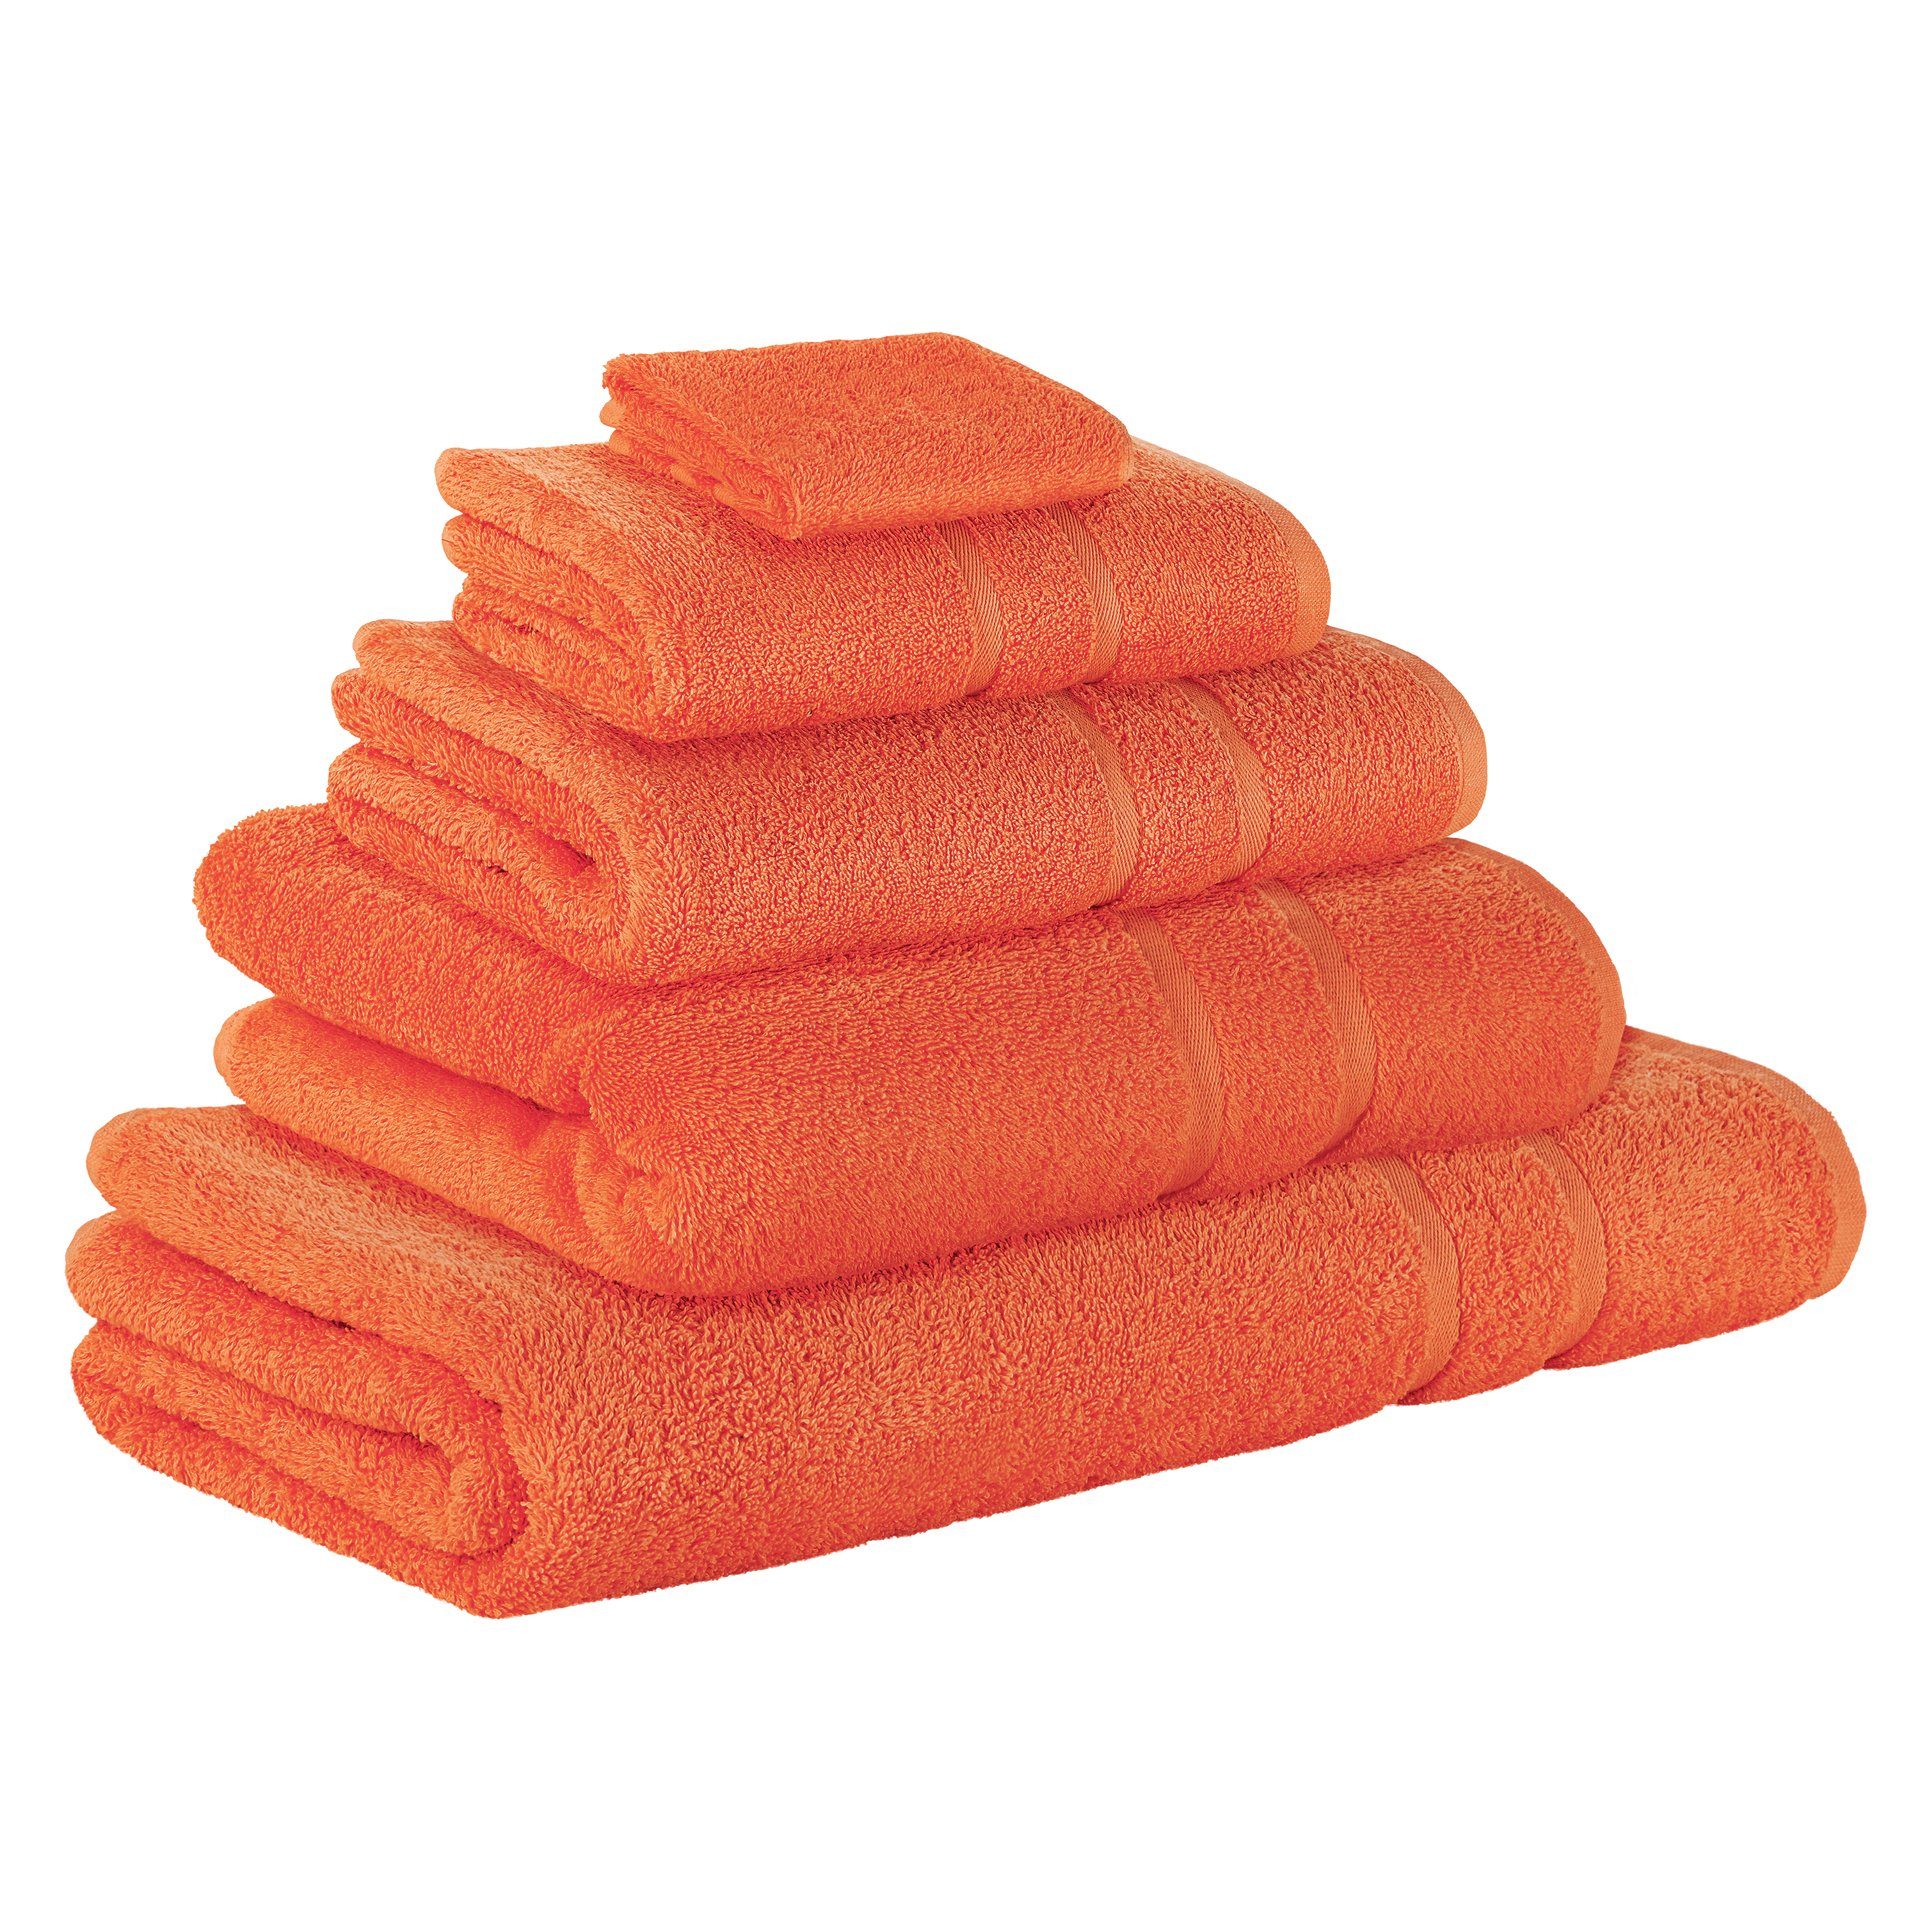 StickandShine Handtuch Set 1x Gästehandtuch 1x Handtuch 1x Duschtuch 1x Badetuch 1x Saunatuch als SET in verschiedenen Farben (5 Teilig) 100% Baumwolle 500 GSM Frottee 5er Handtuch Pack, 100% Baumwolle 500 GSM Orange